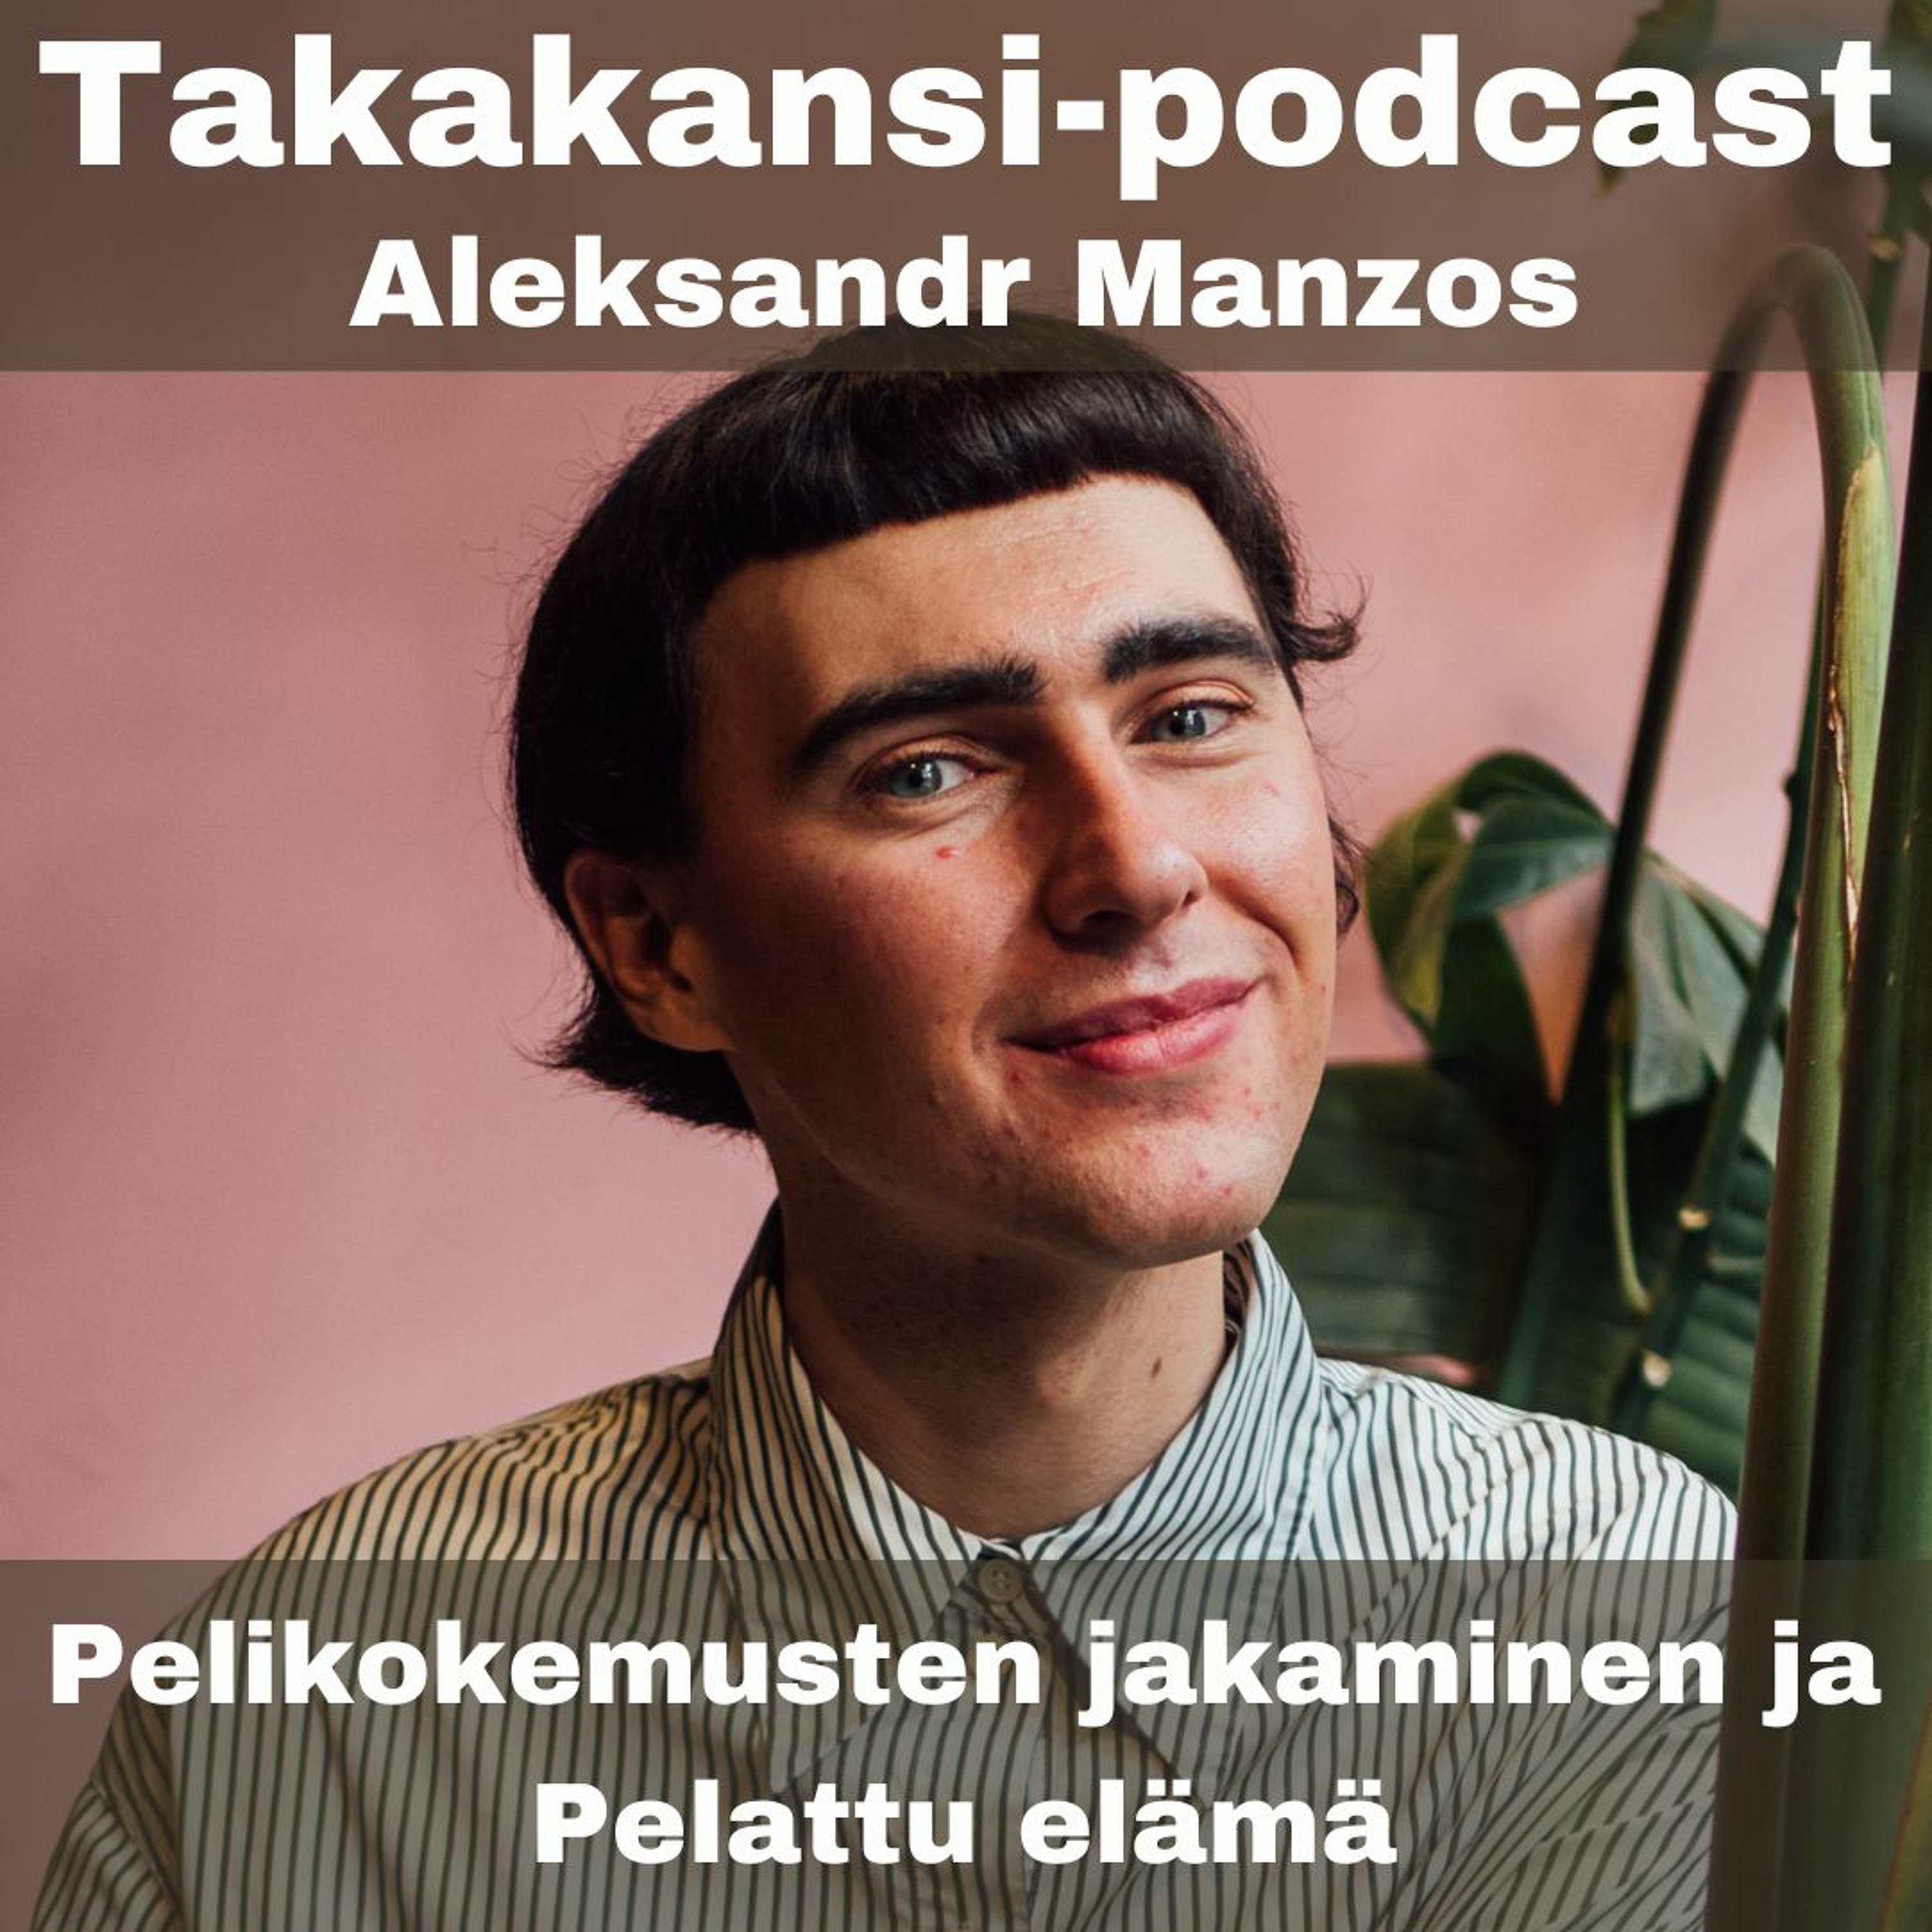 Aleksandr Manzos - Pelikokemusten jakaminen ja Pelattu elämä